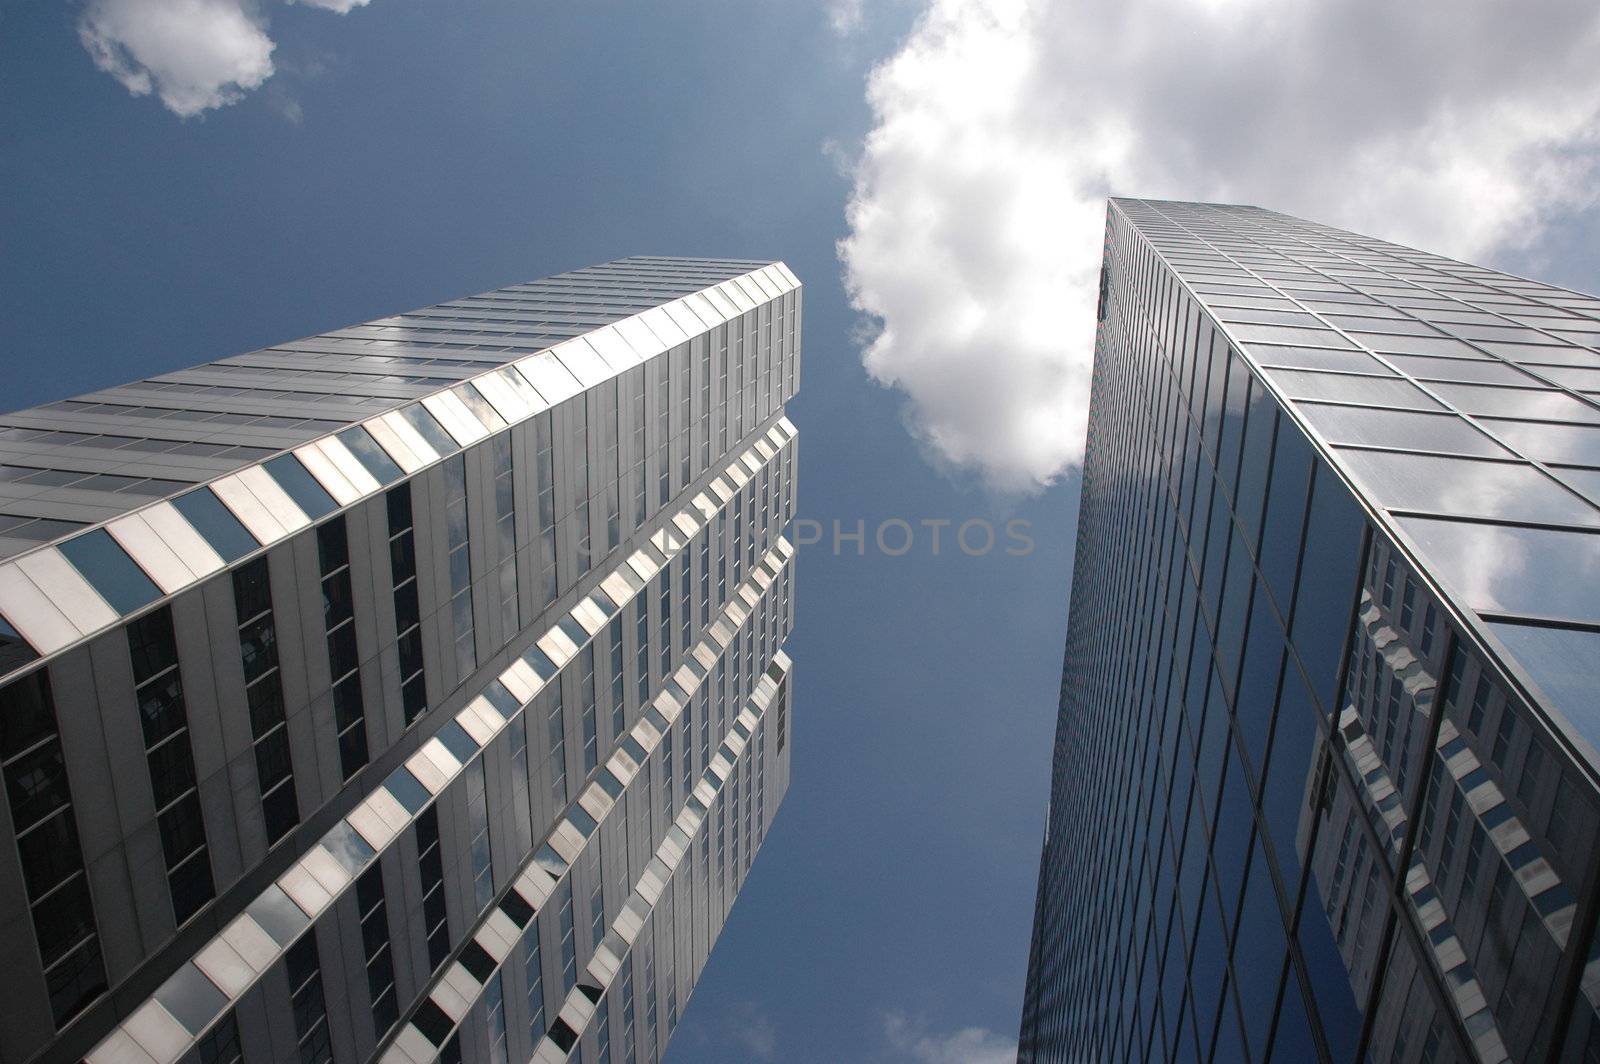 Close up view of a modern skyscraper